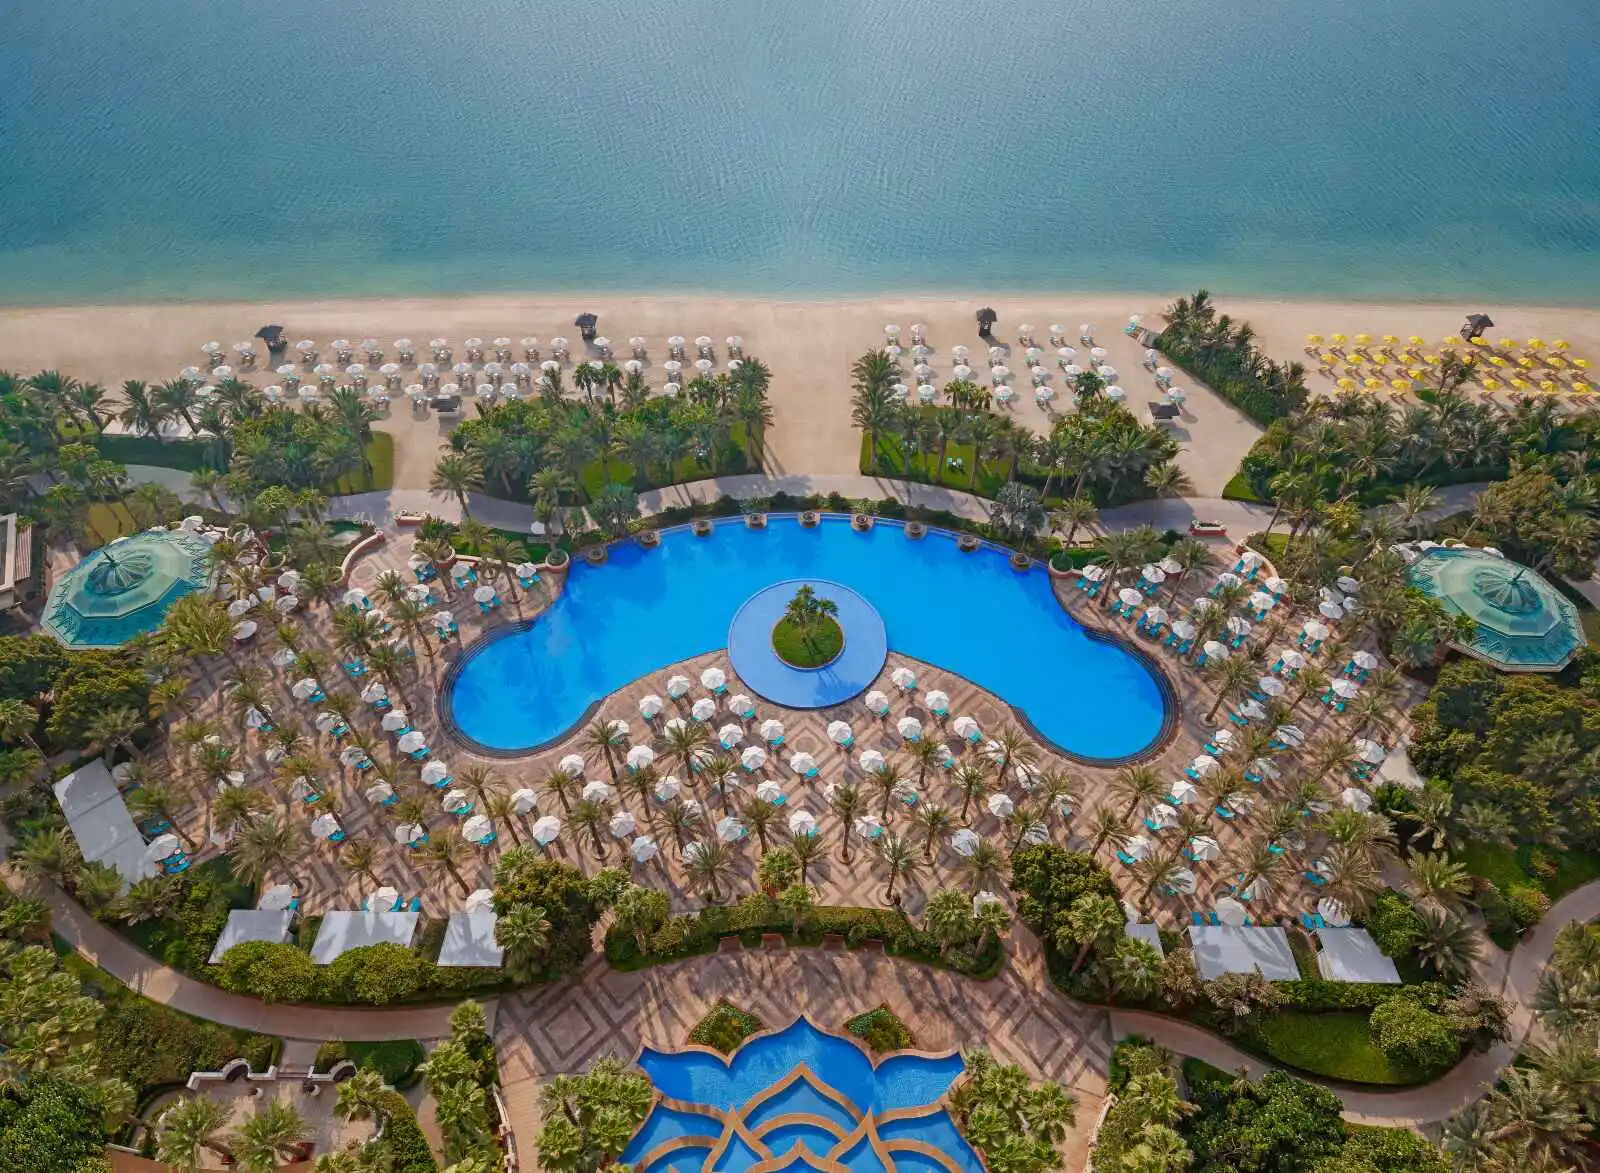 Vue aérienne de la piscine royale, Atlantis The Palm, Dubaï, Émirats arabes unis